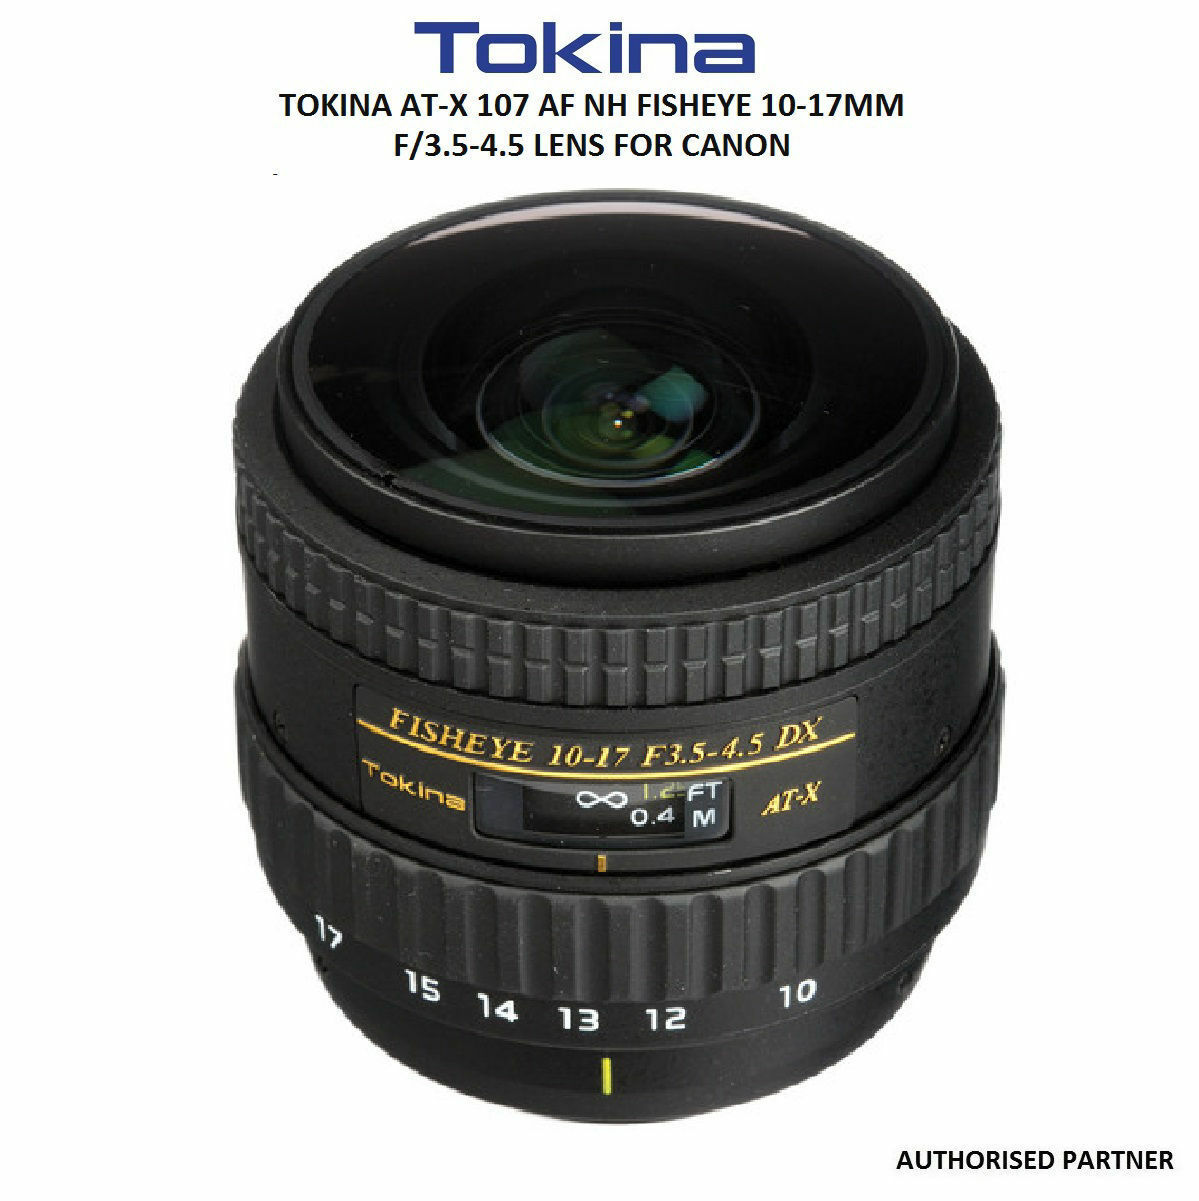 TOKINA AT-X107 DX FISHEYE 10-17 f3.5-4.5 - レンズ(単焦点)